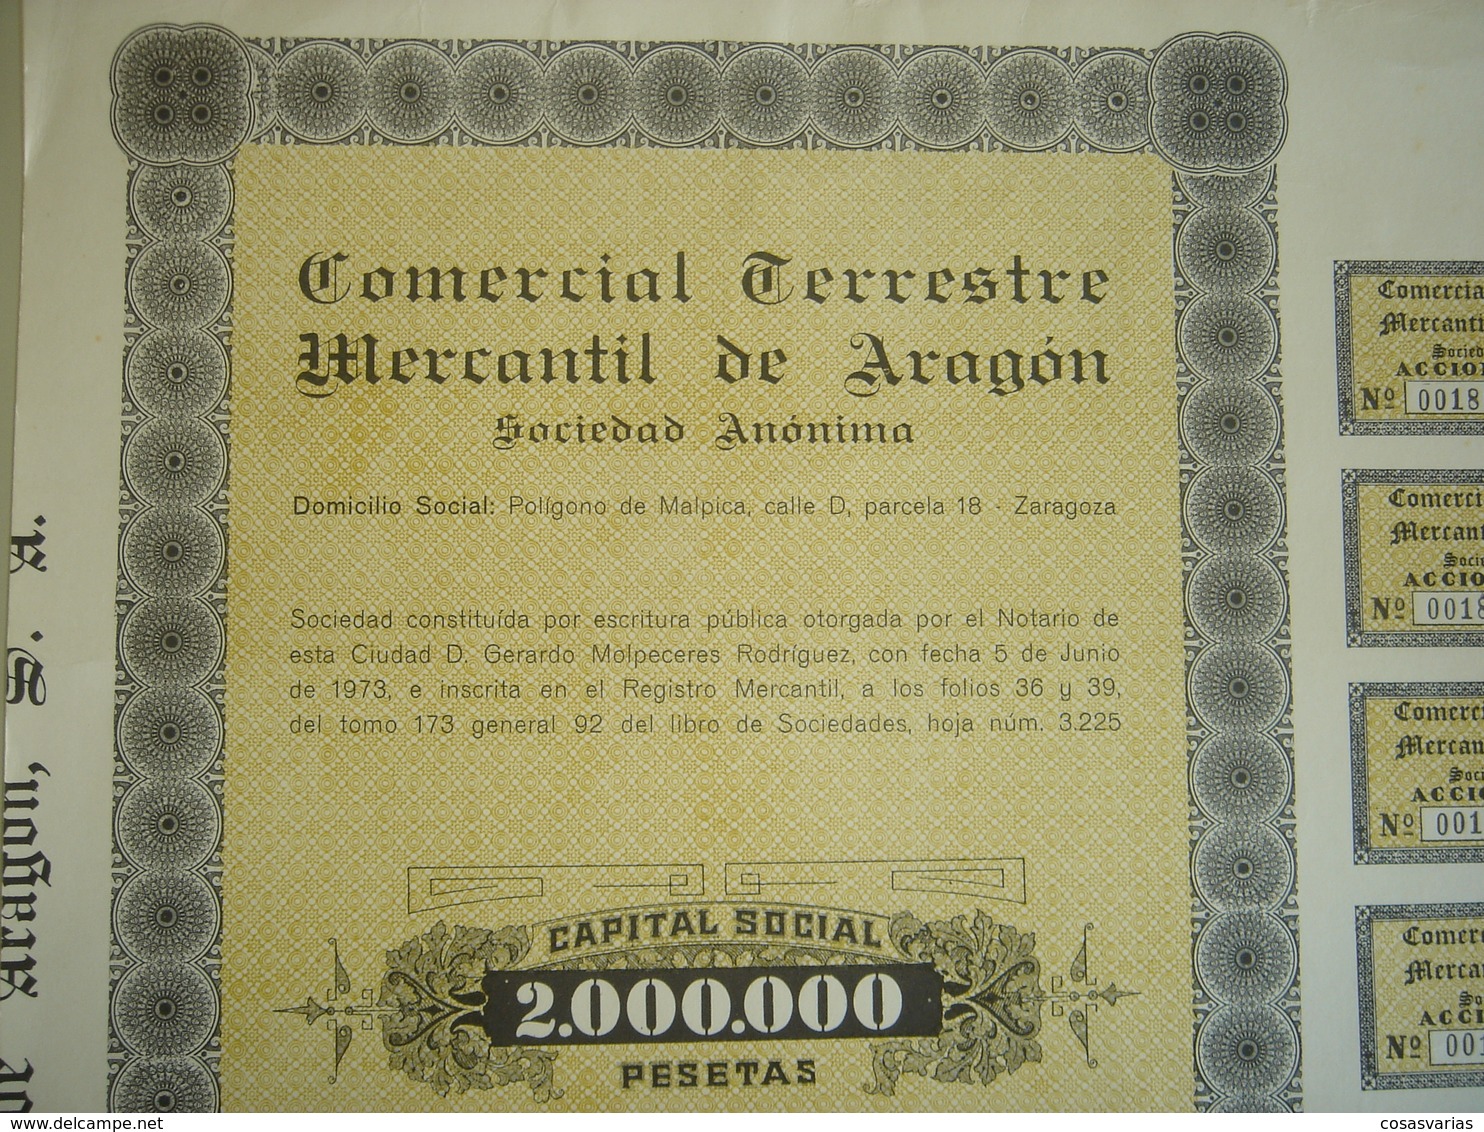 COMERCIAL TERRESTRE MERCANTIL ARAGÓN - Acción 1000 Pesetas - Zaragoza, 5 Junio 1974 - OriginalACTION AKTION - Transporte